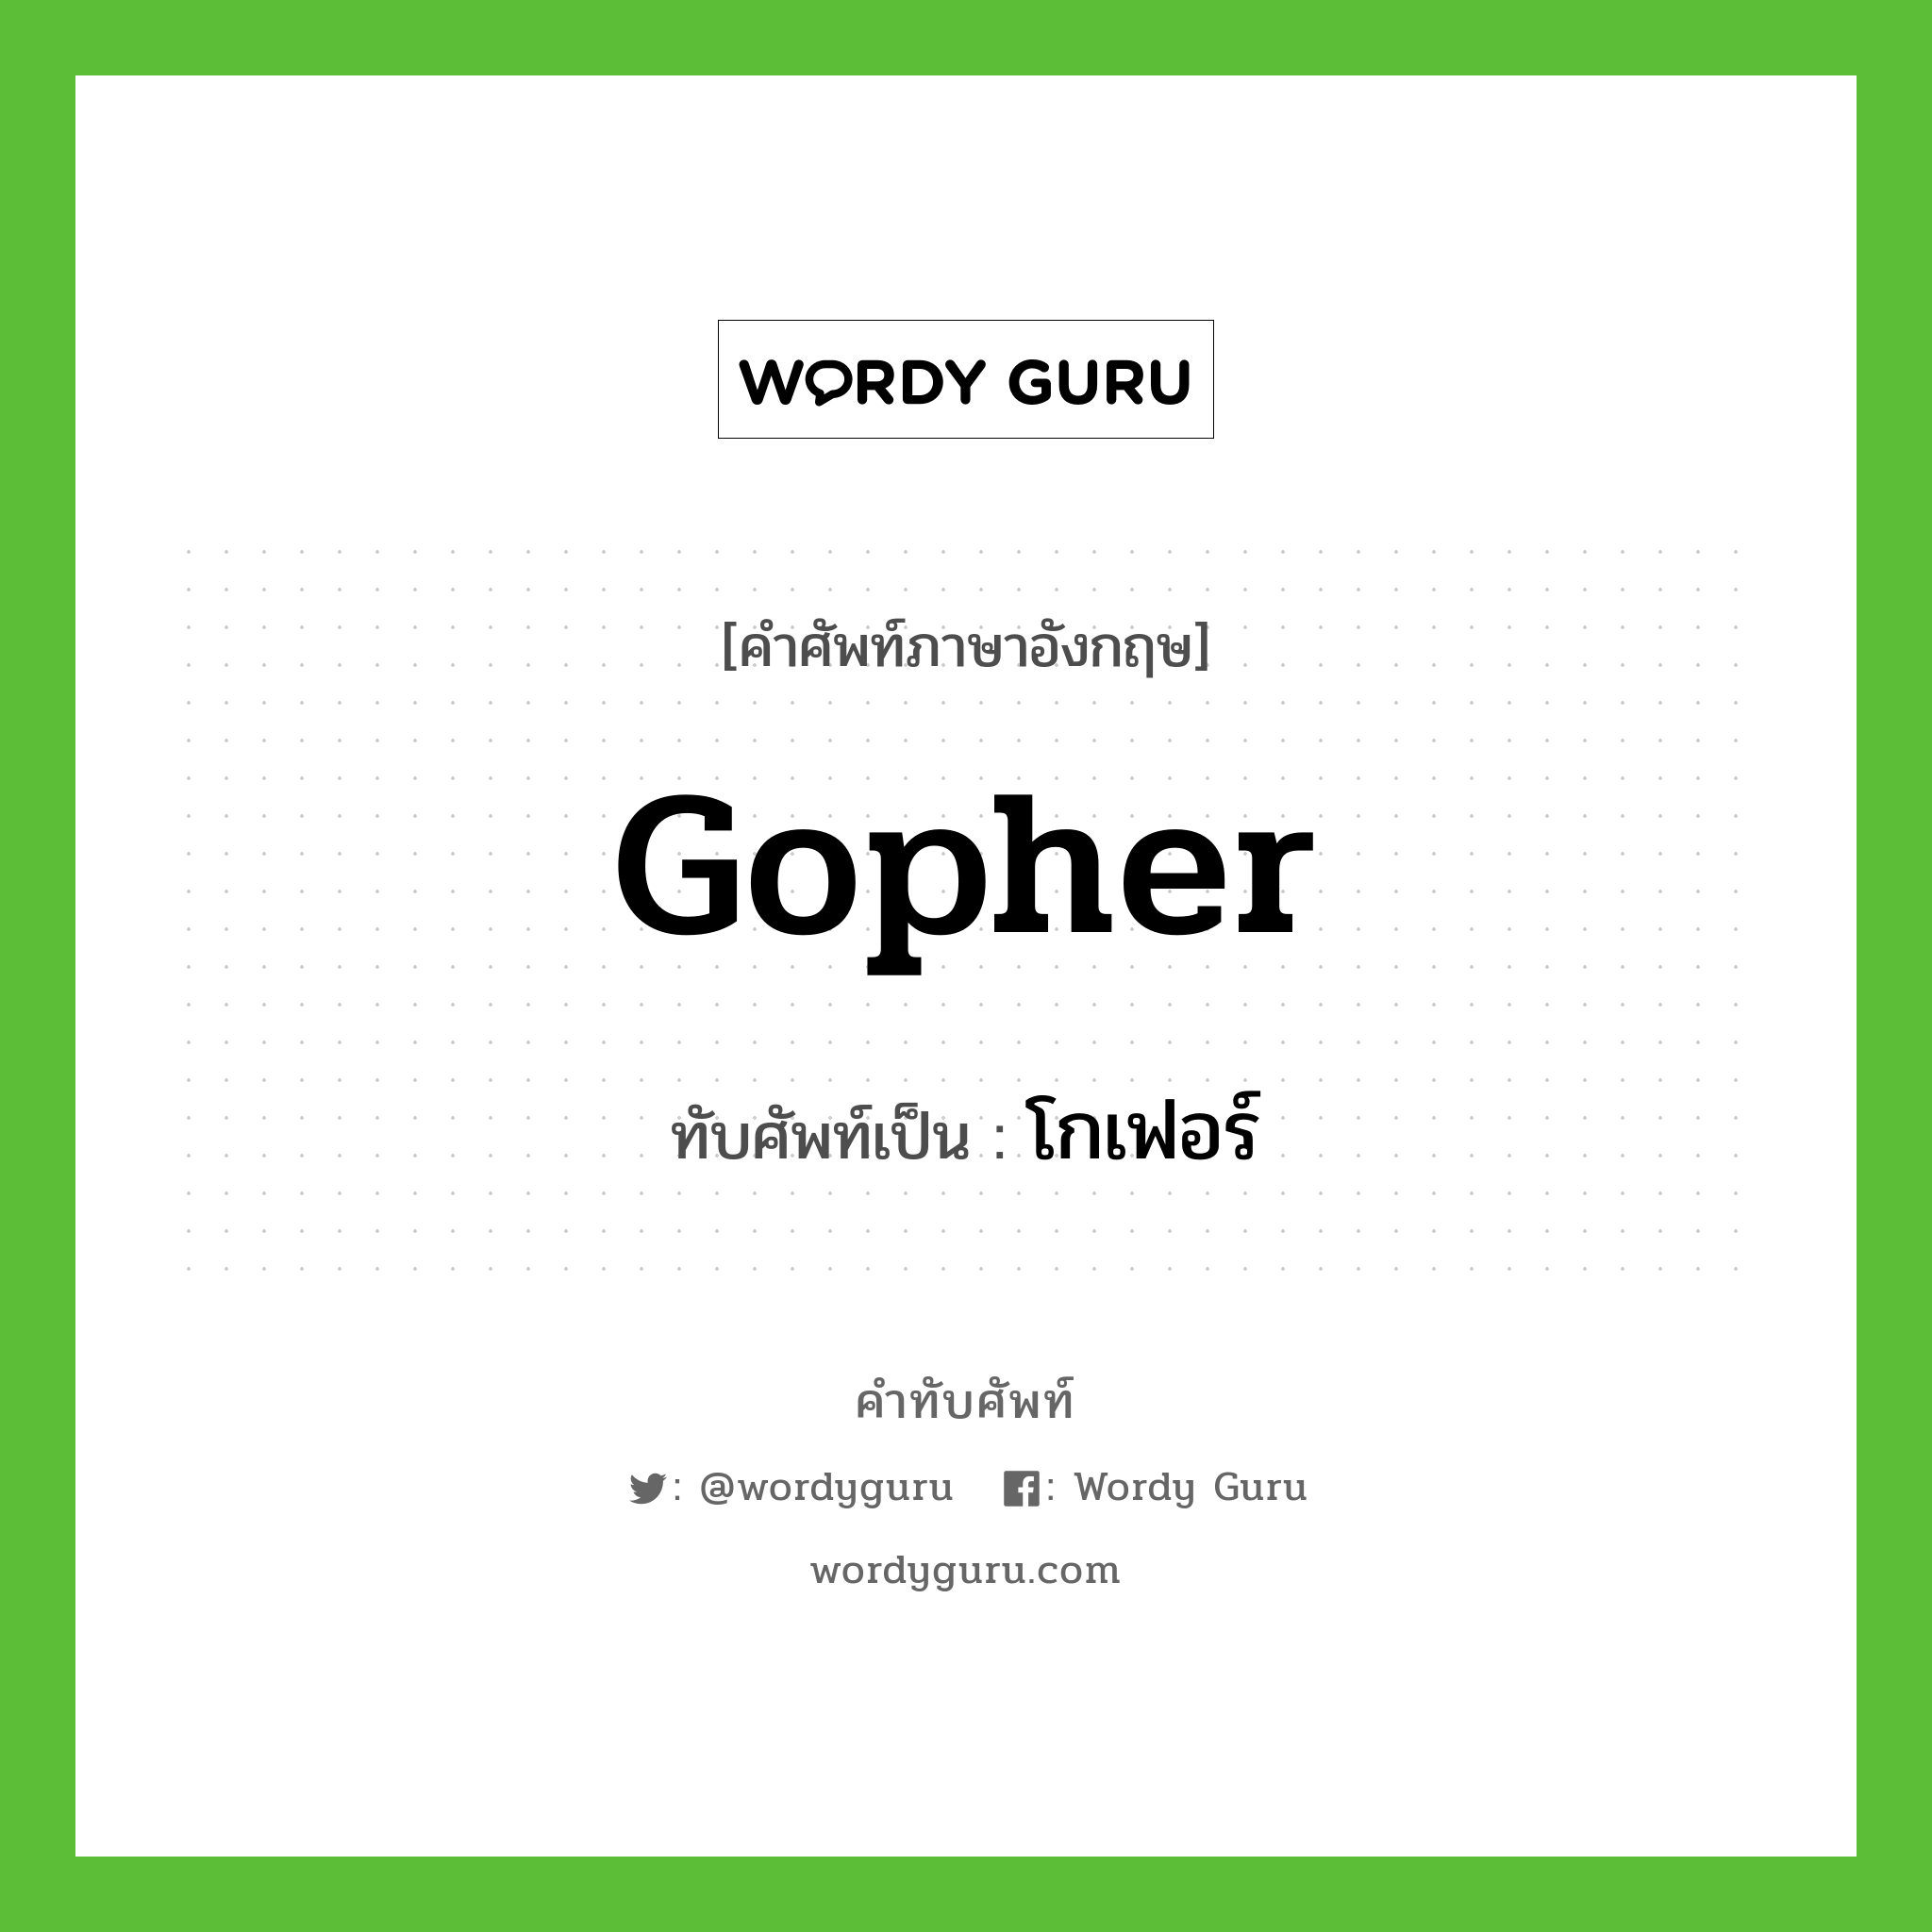 Gopher เขียนเป็นคำไทยว่าอะไร?, คำศัพท์ภาษาอังกฤษ Gopher ทับศัพท์เป็น โกเฟอร์